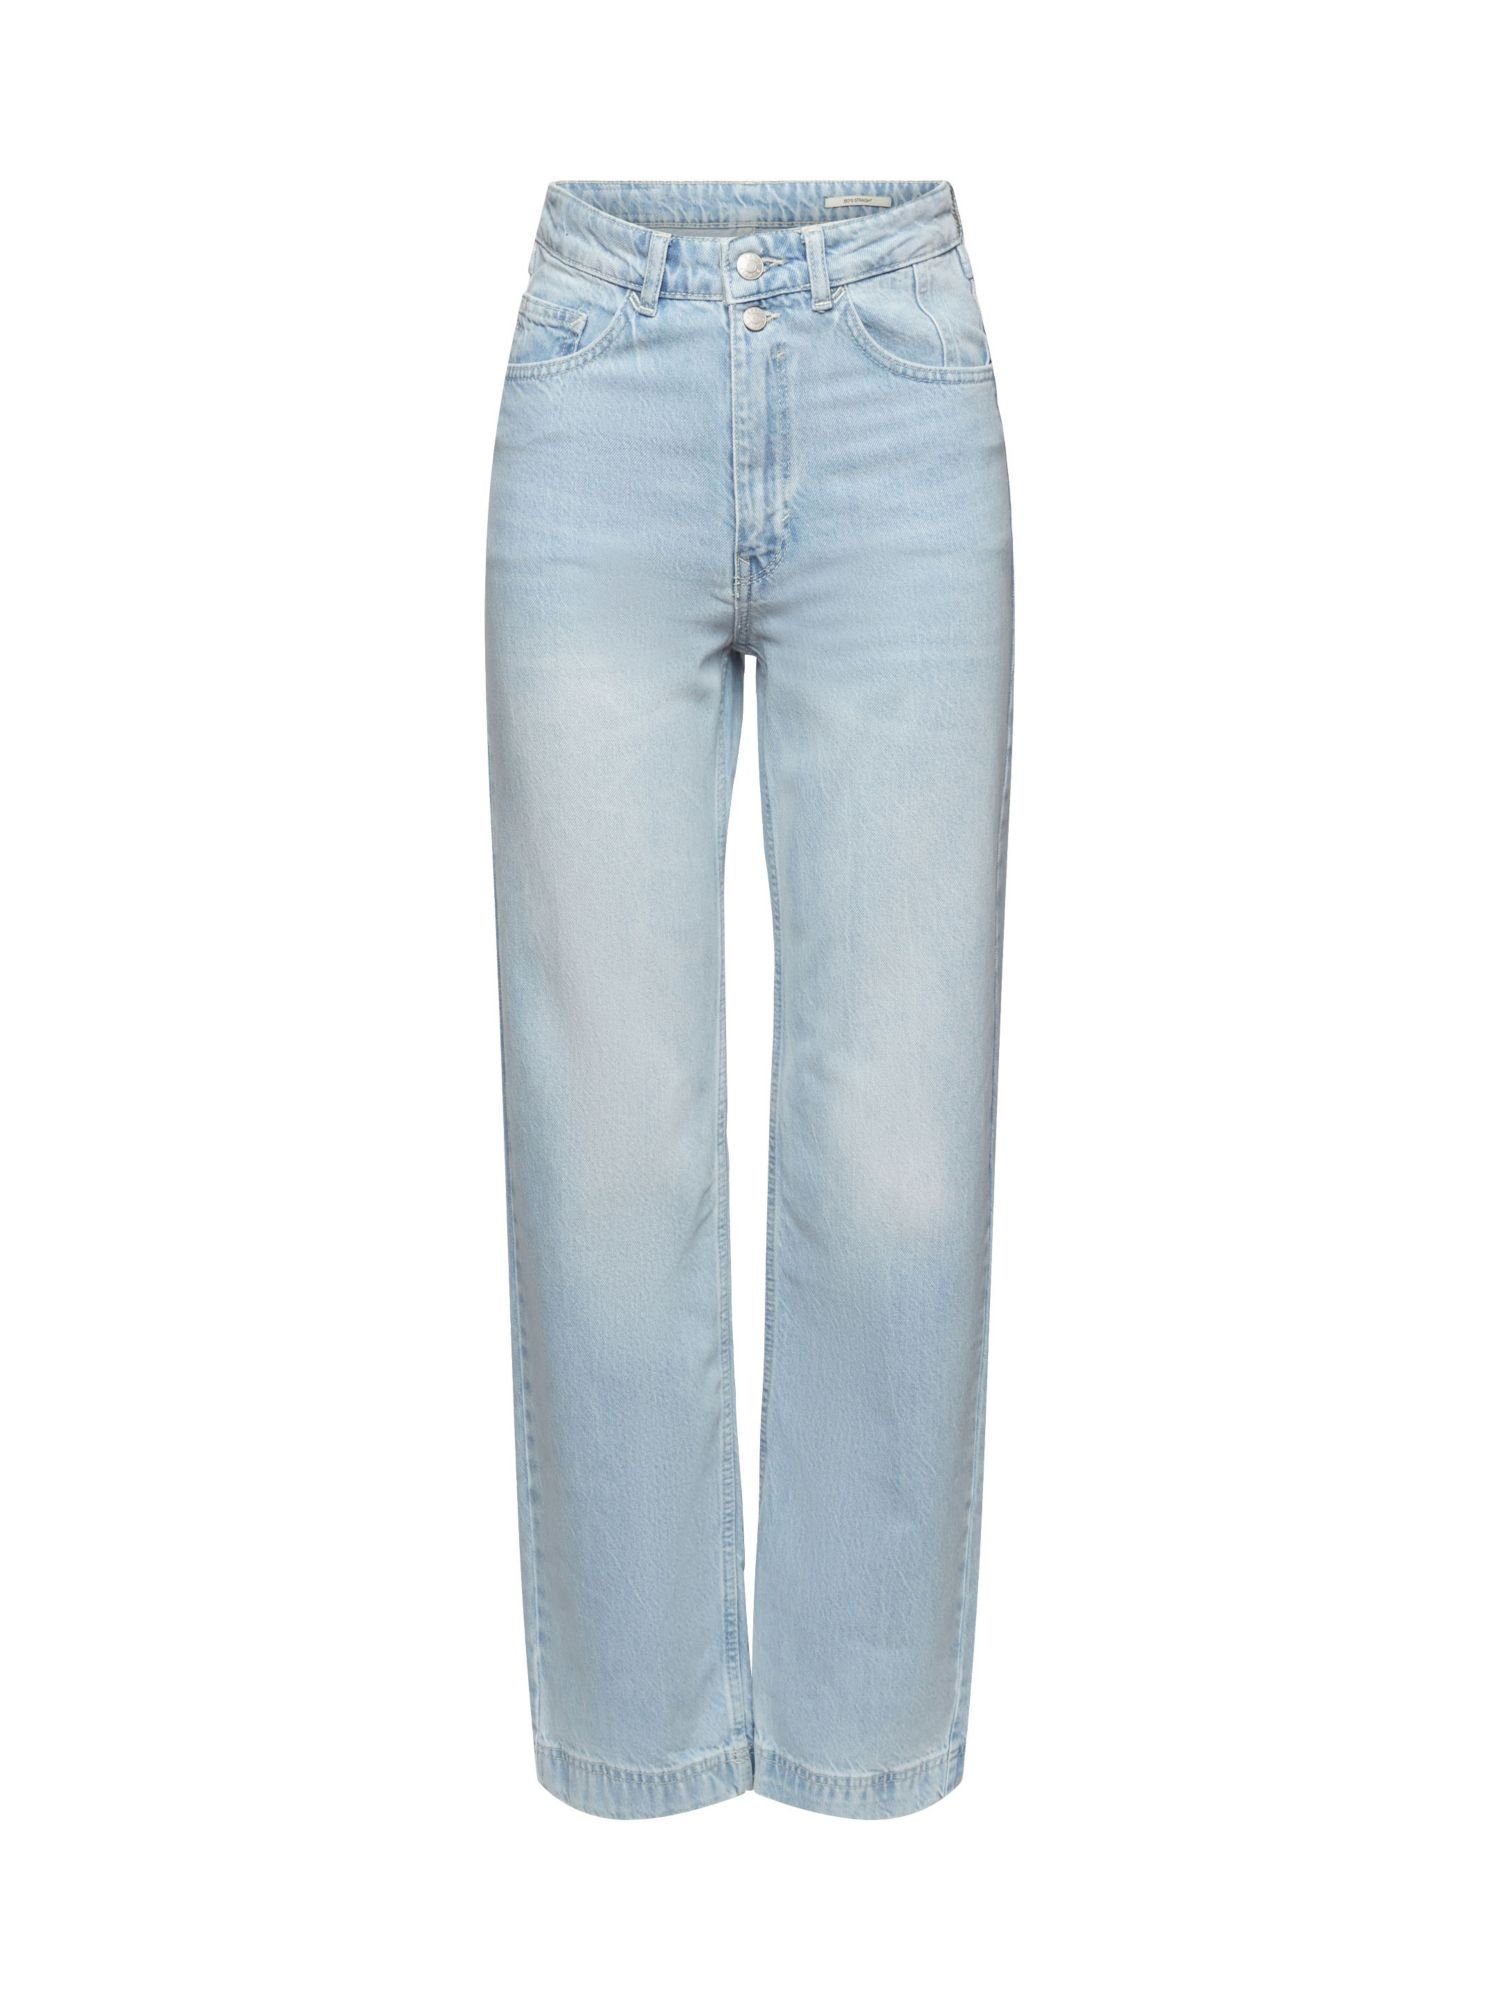 Esprit Slim-fit-Jeans Straight Leg Jeans BLUE BLEACHED